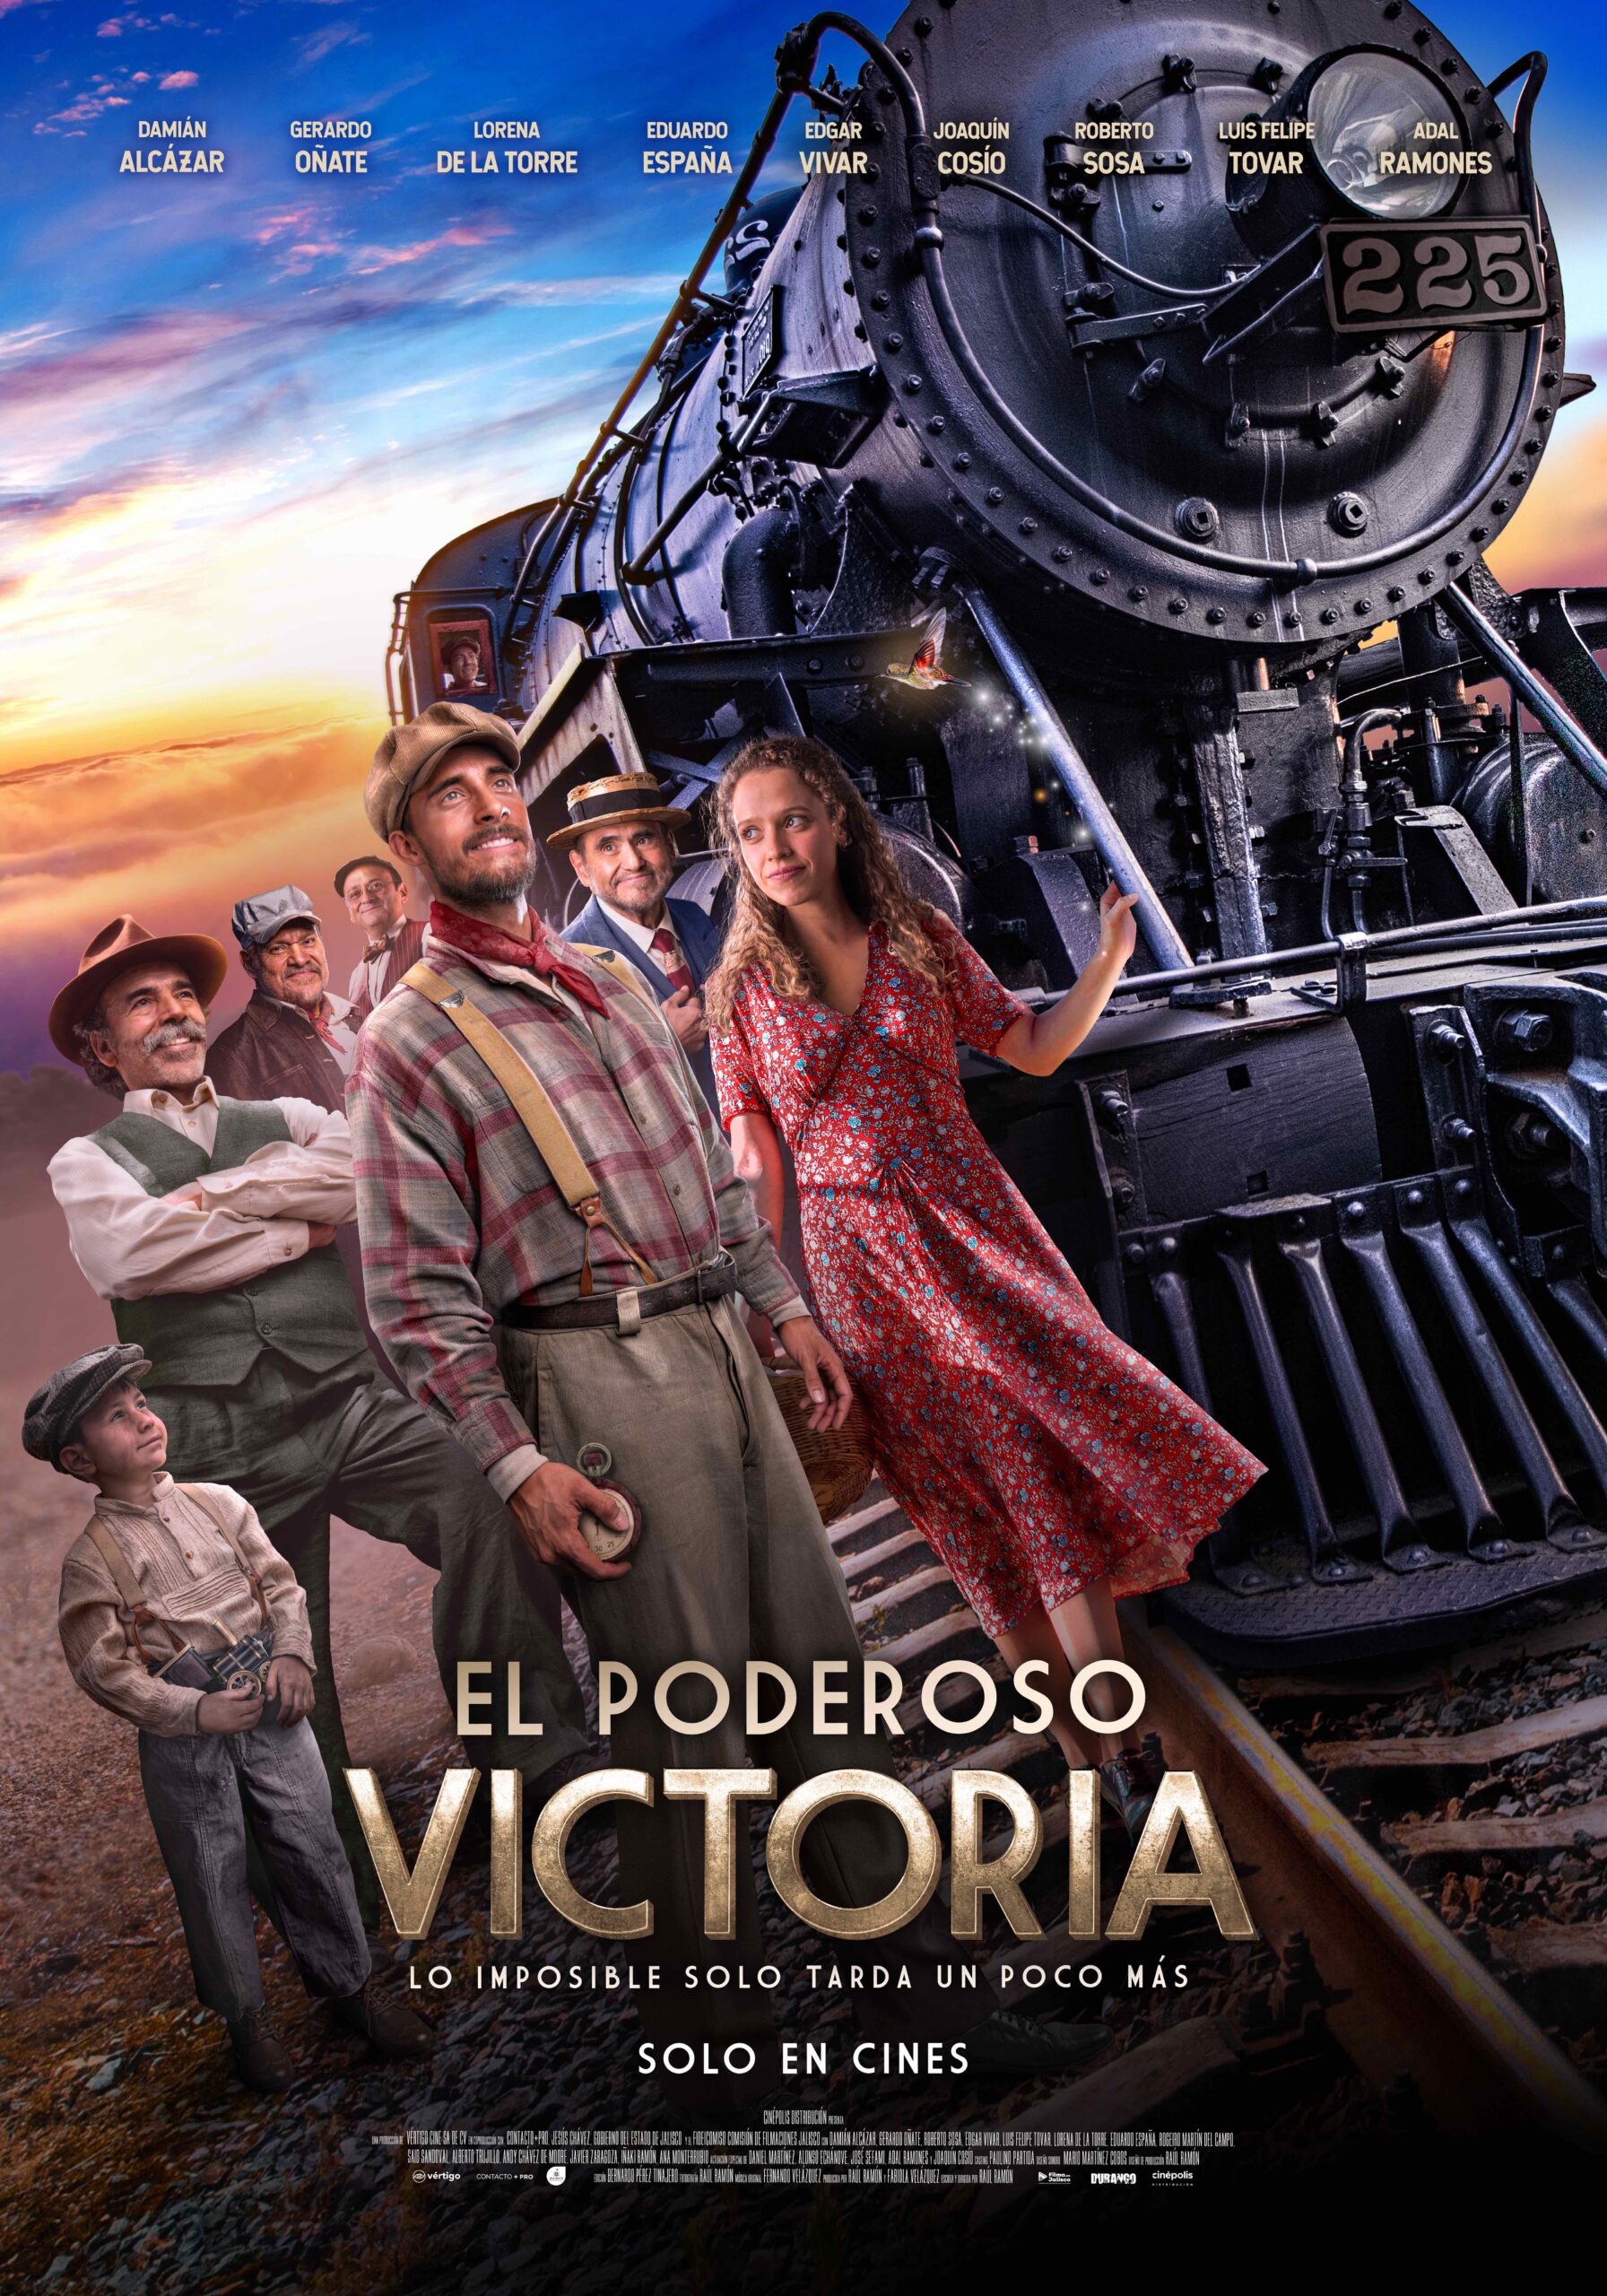 Se estrena en todo el país el filme "El Poderosa Victoria", con la actuación estelar de Damián Alcazar